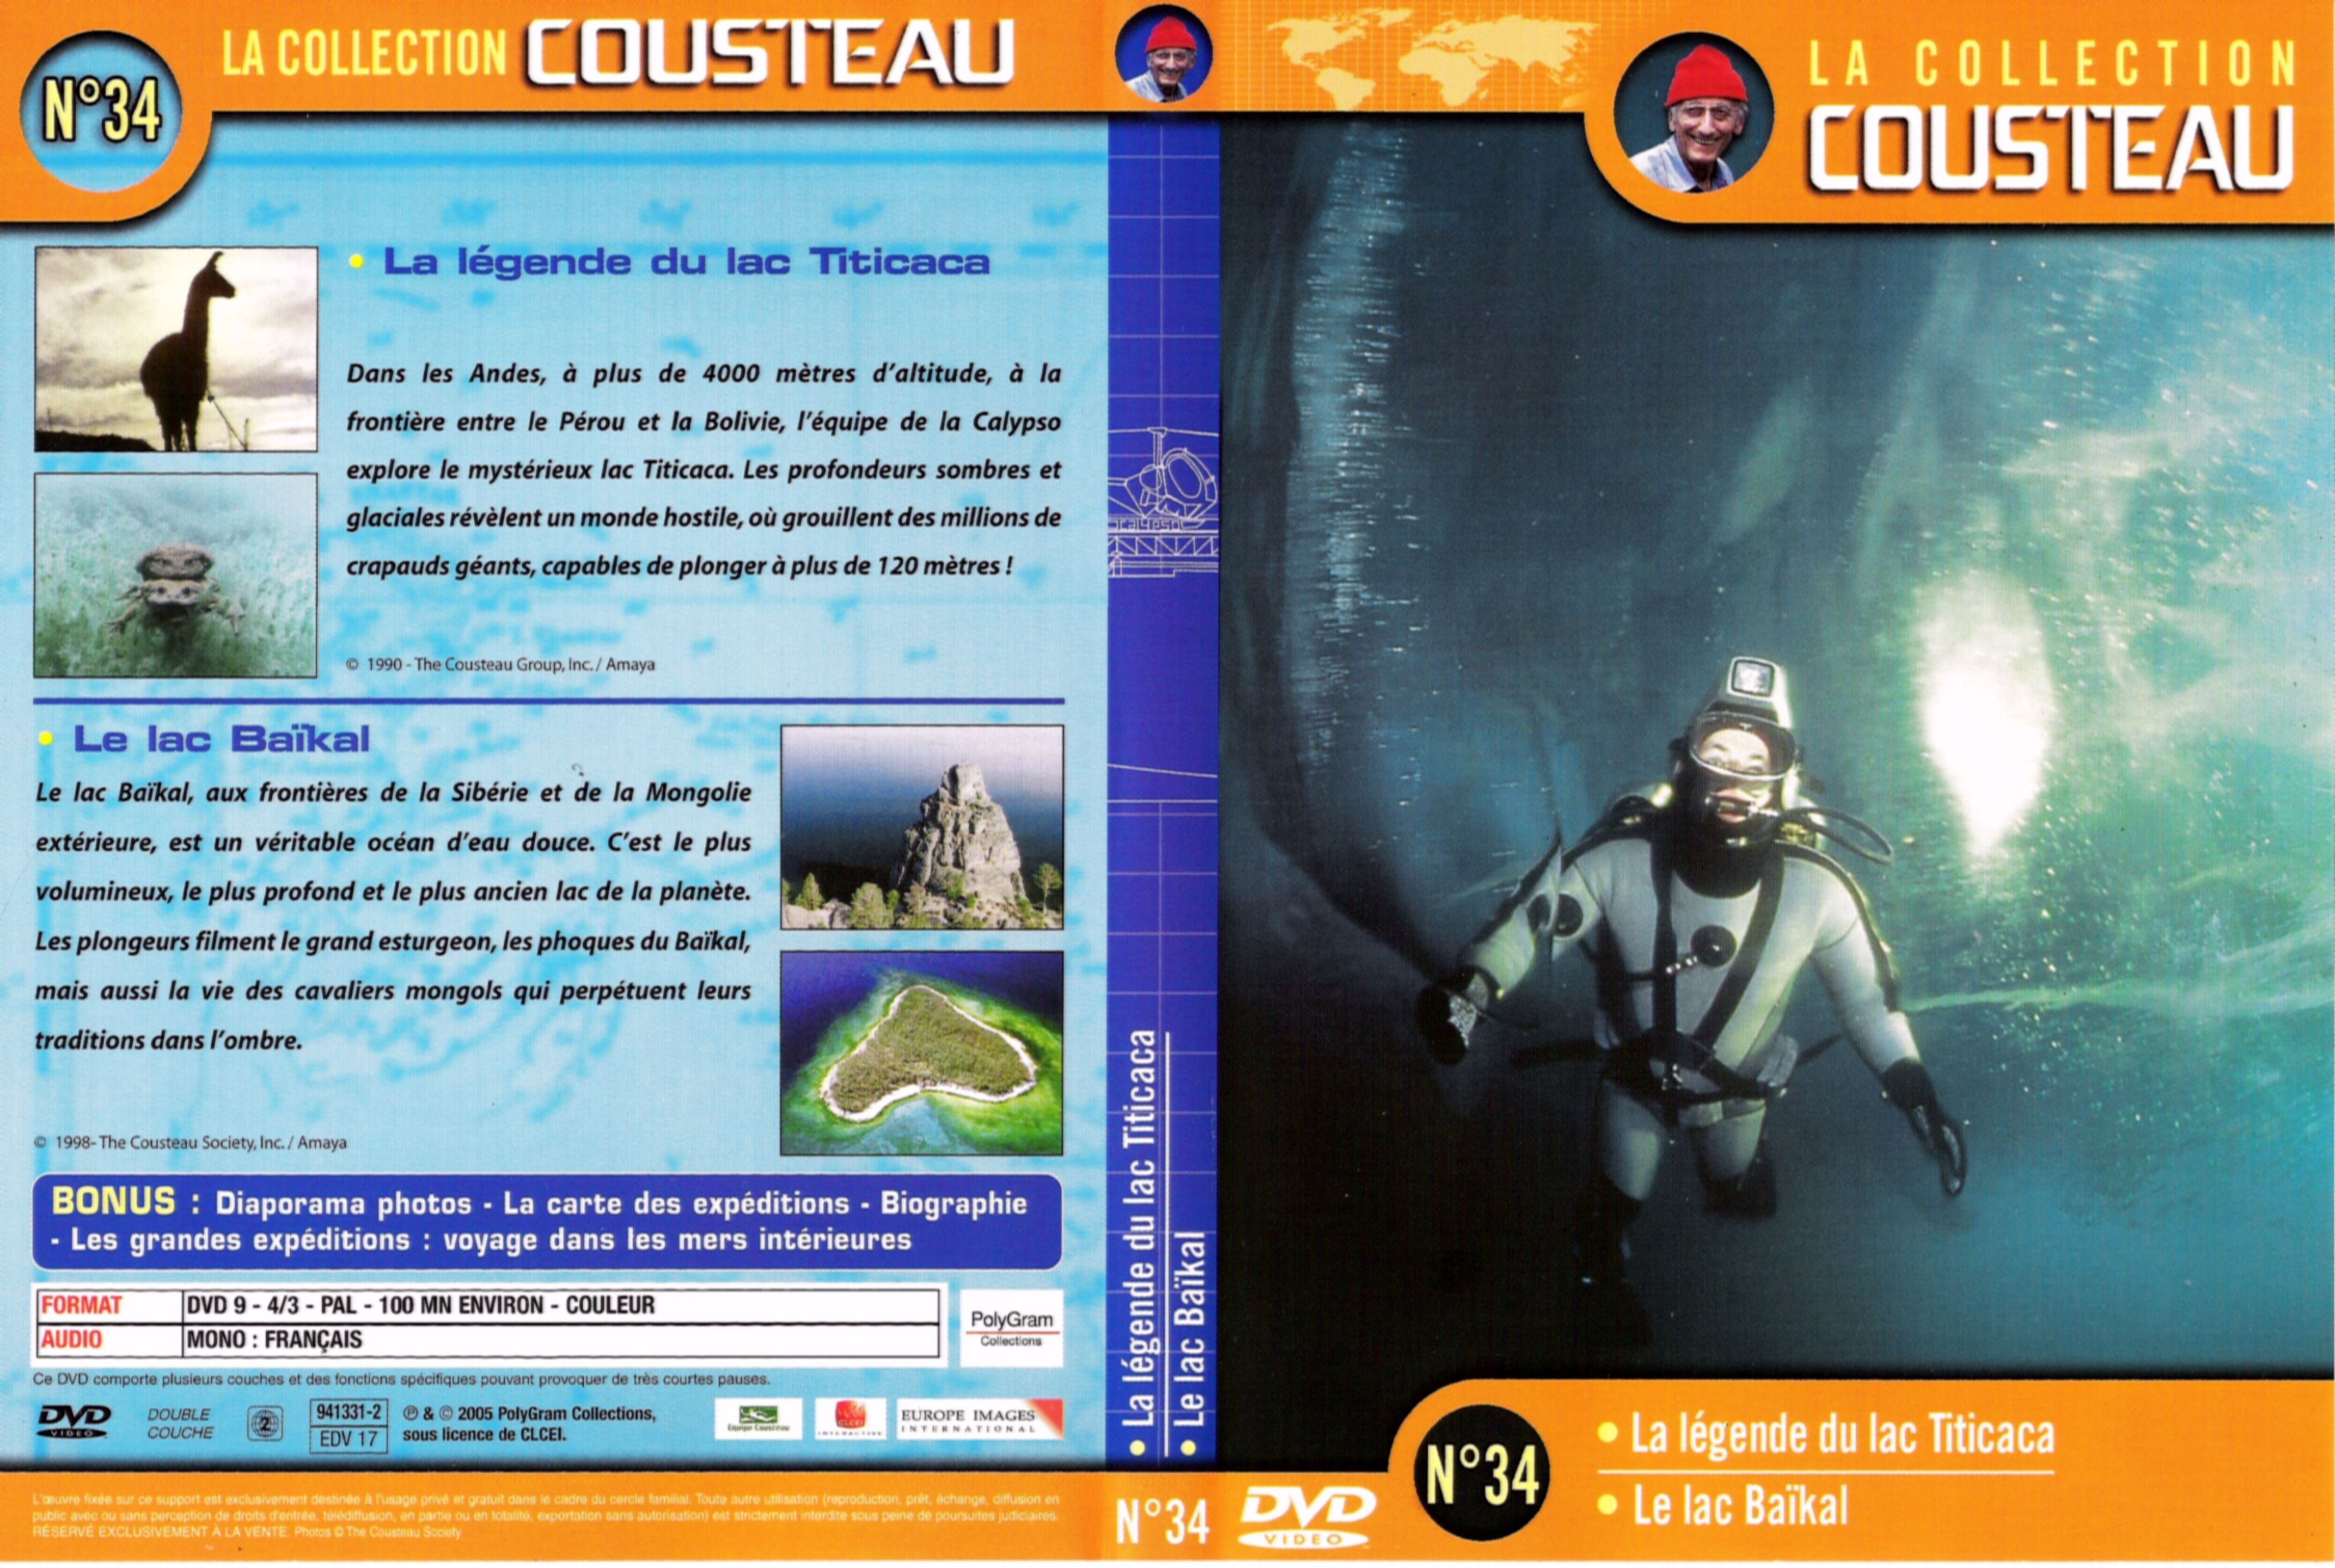 Jaquette DVD Cousteau Collection vol 34